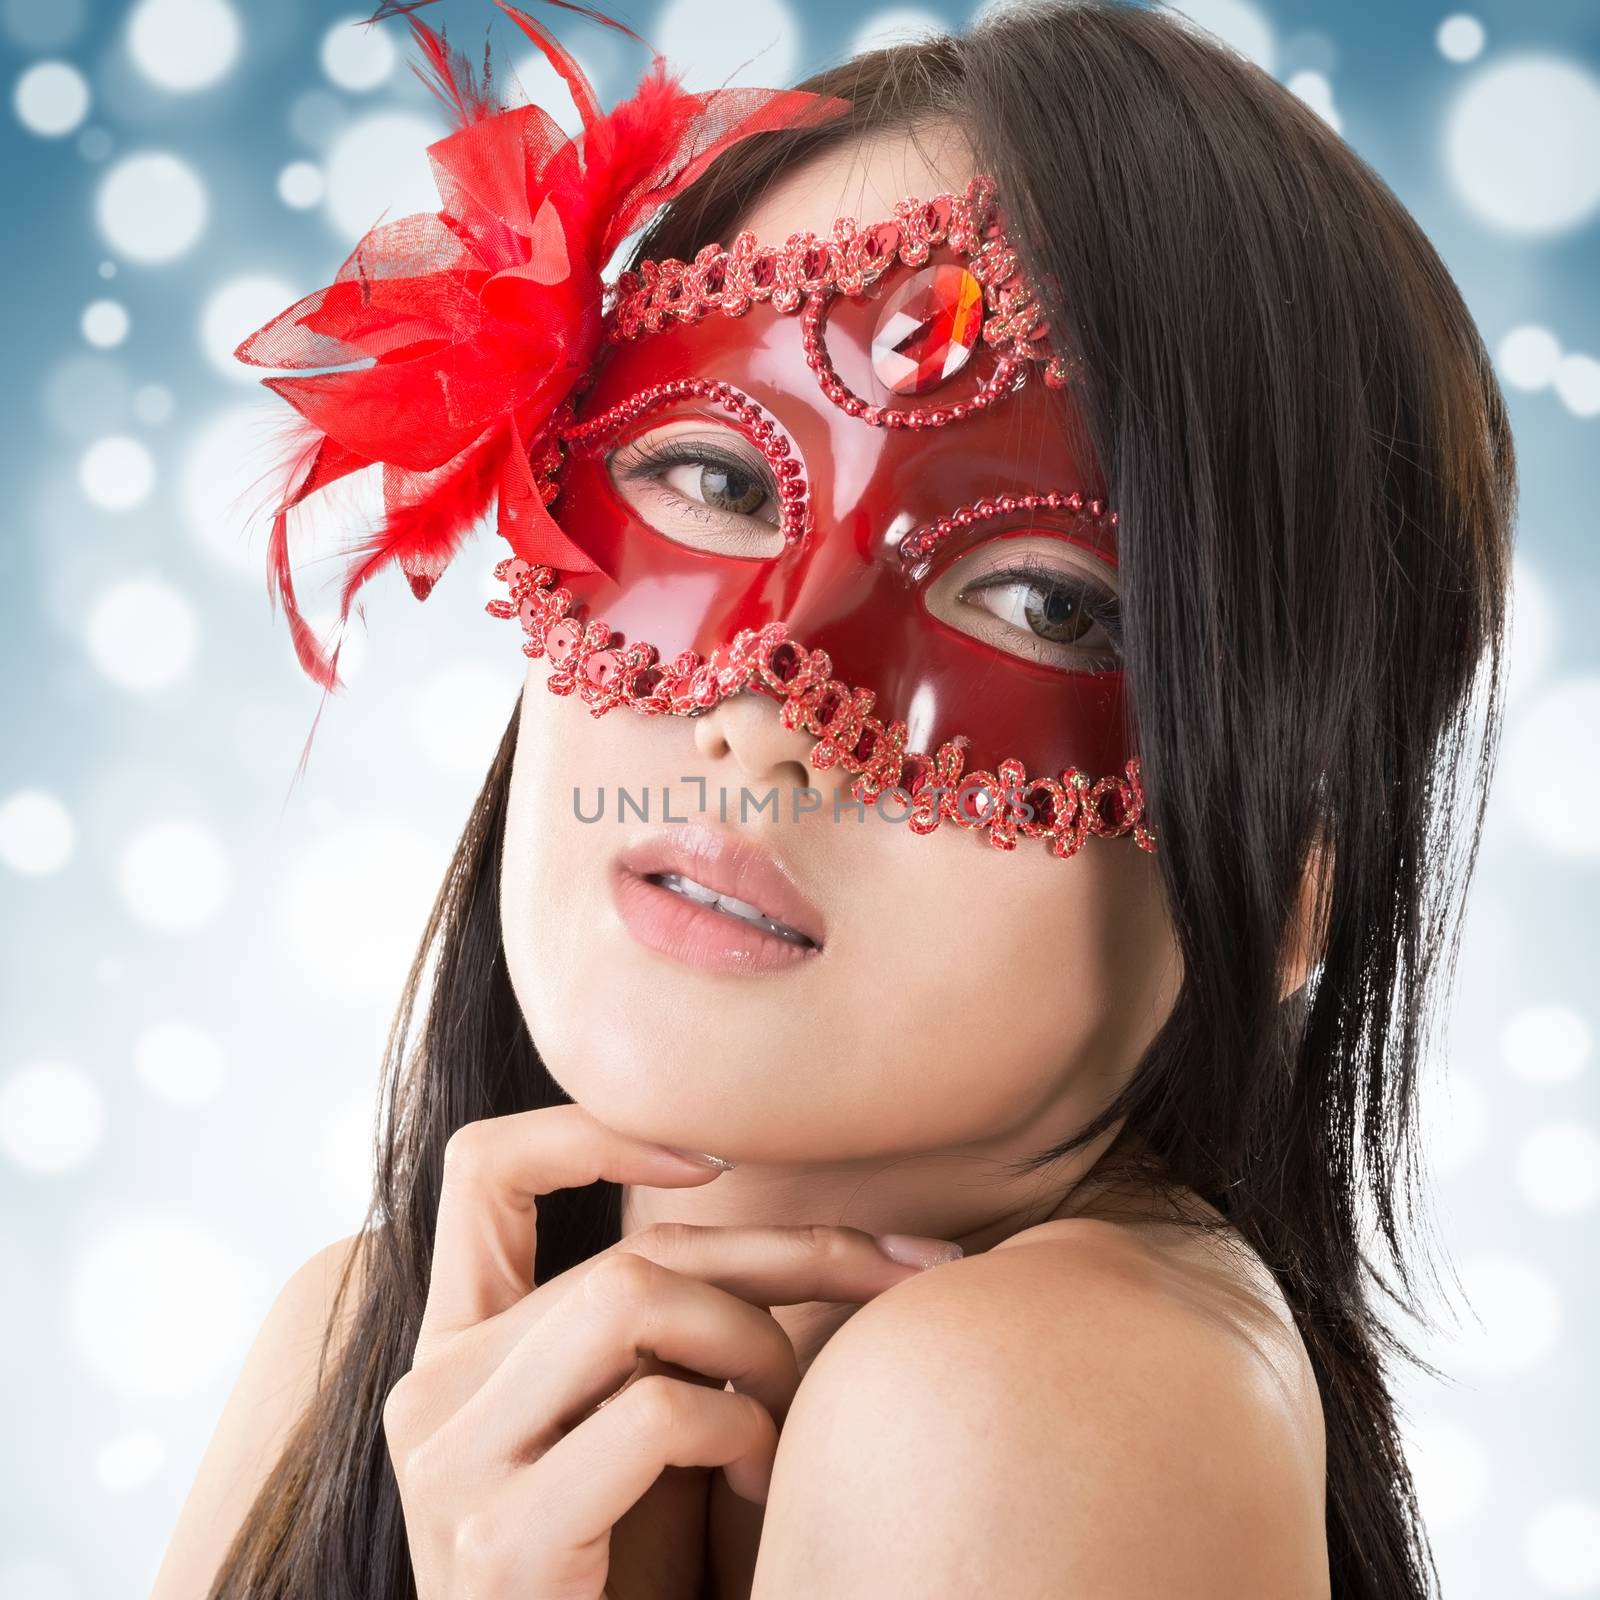 beautiful woman in a carnival mask by elwynn